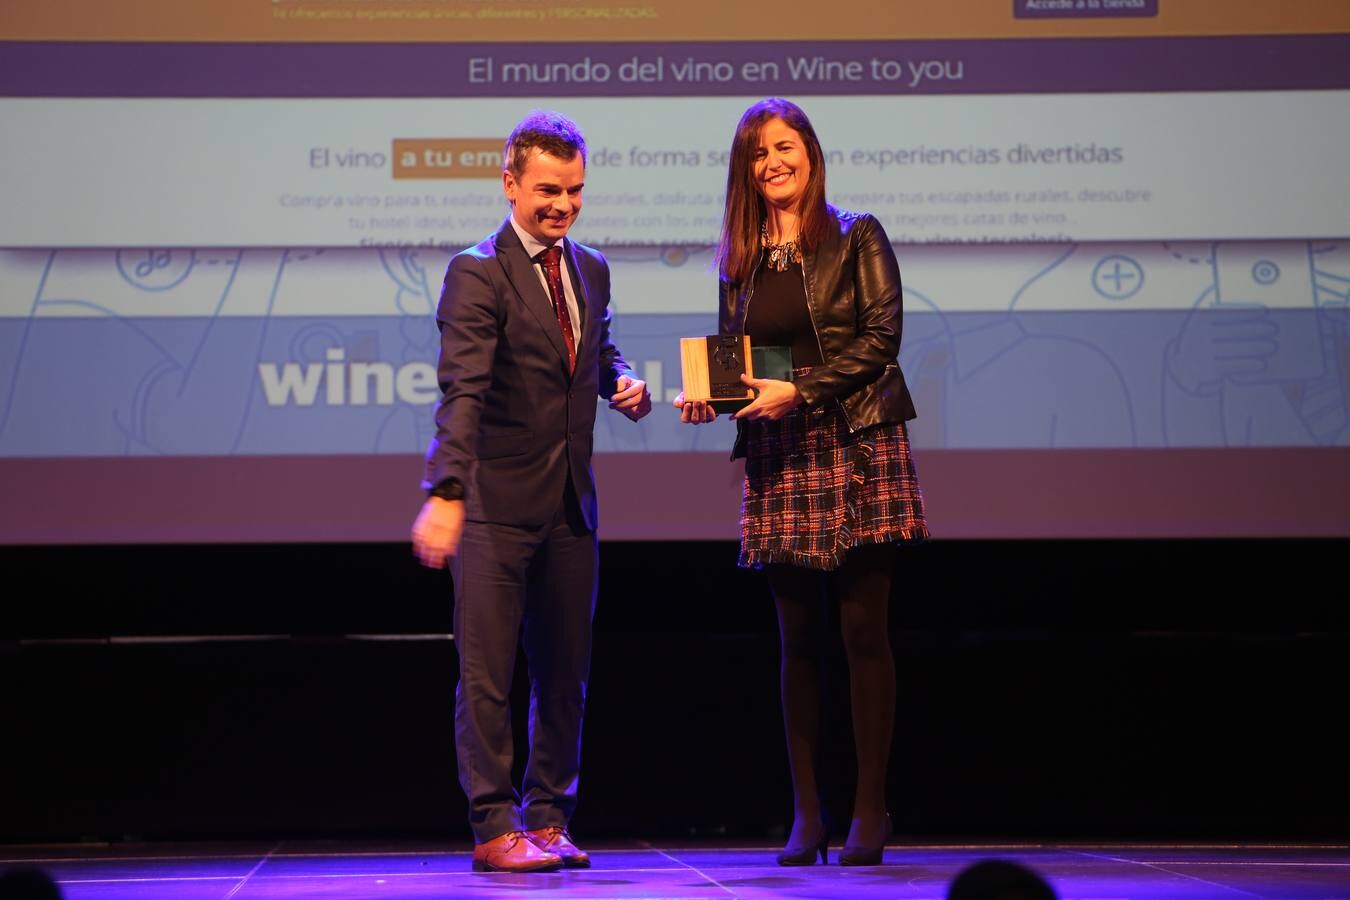 Galardonados en los Premios Cantabria Digital 